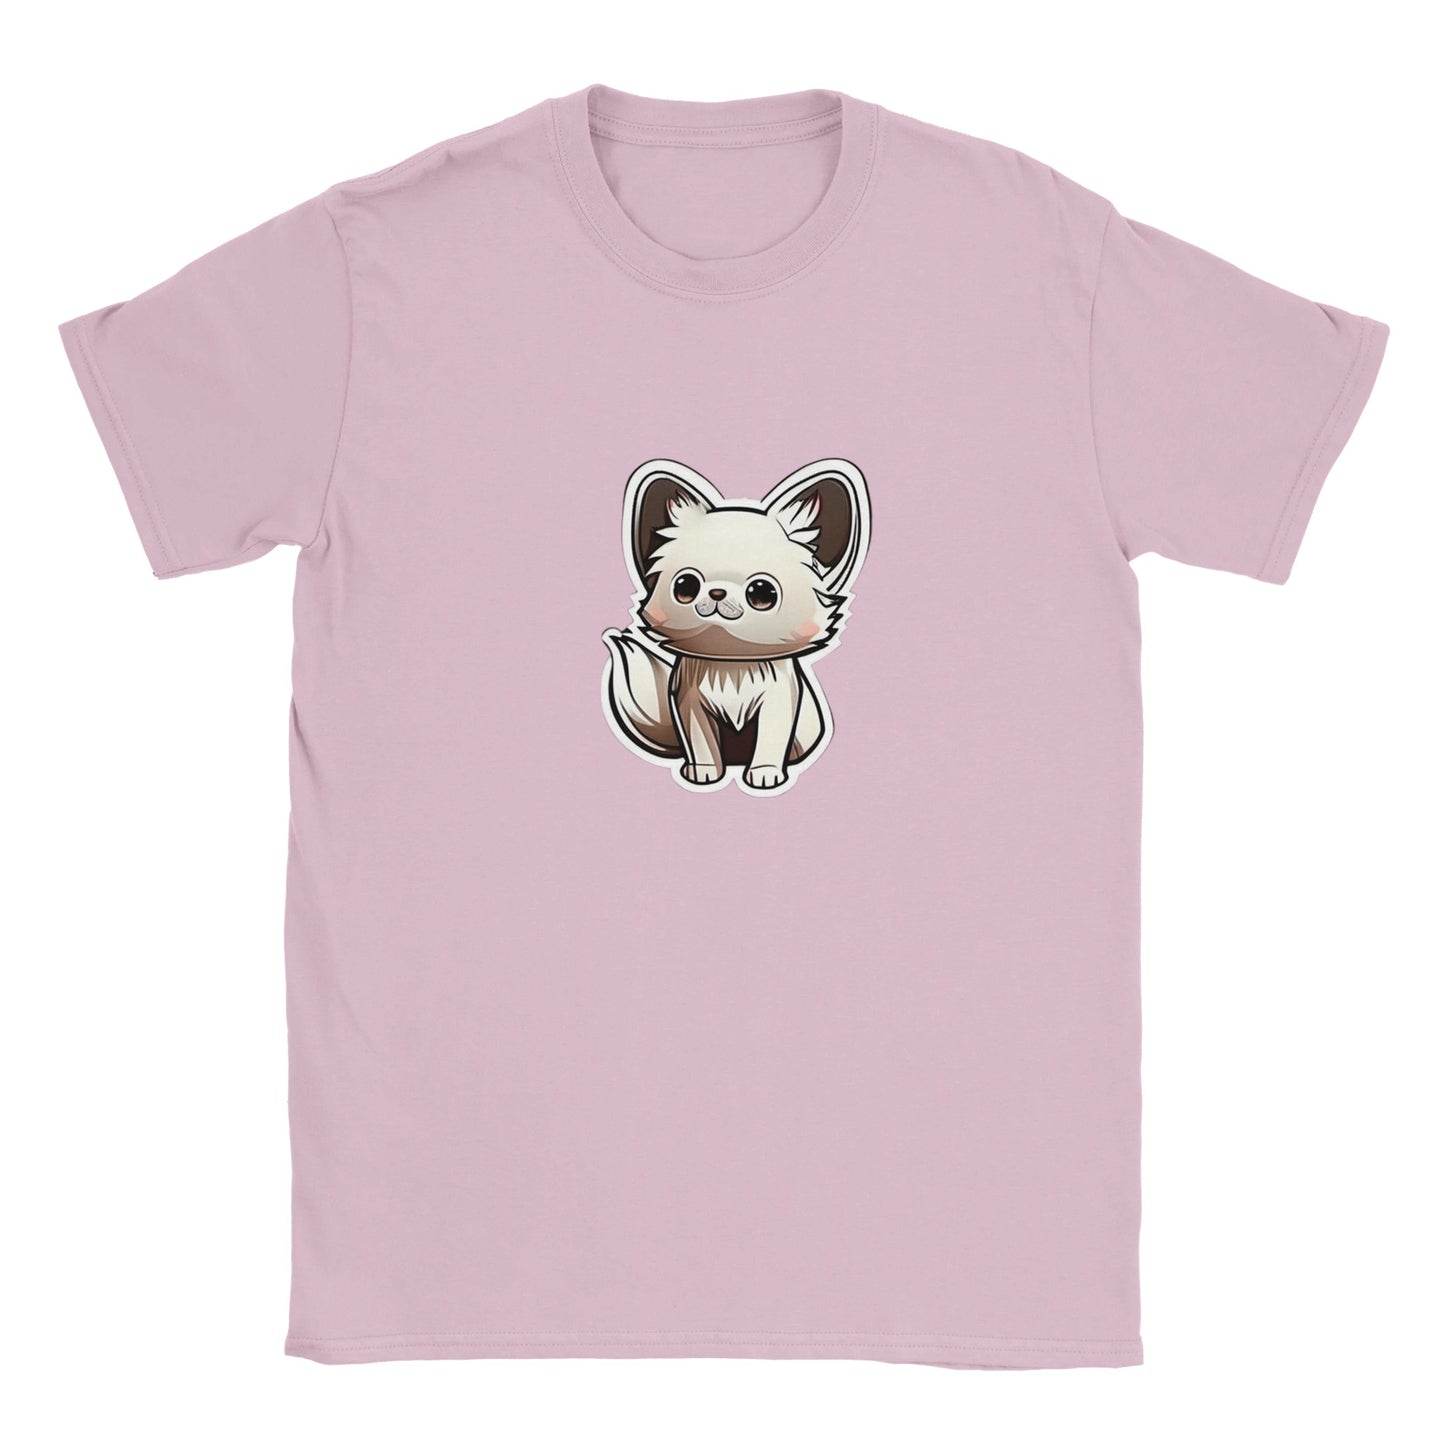 Animal Print | Classic Kids Crewneck T-shirt | Chibi | Kawaii